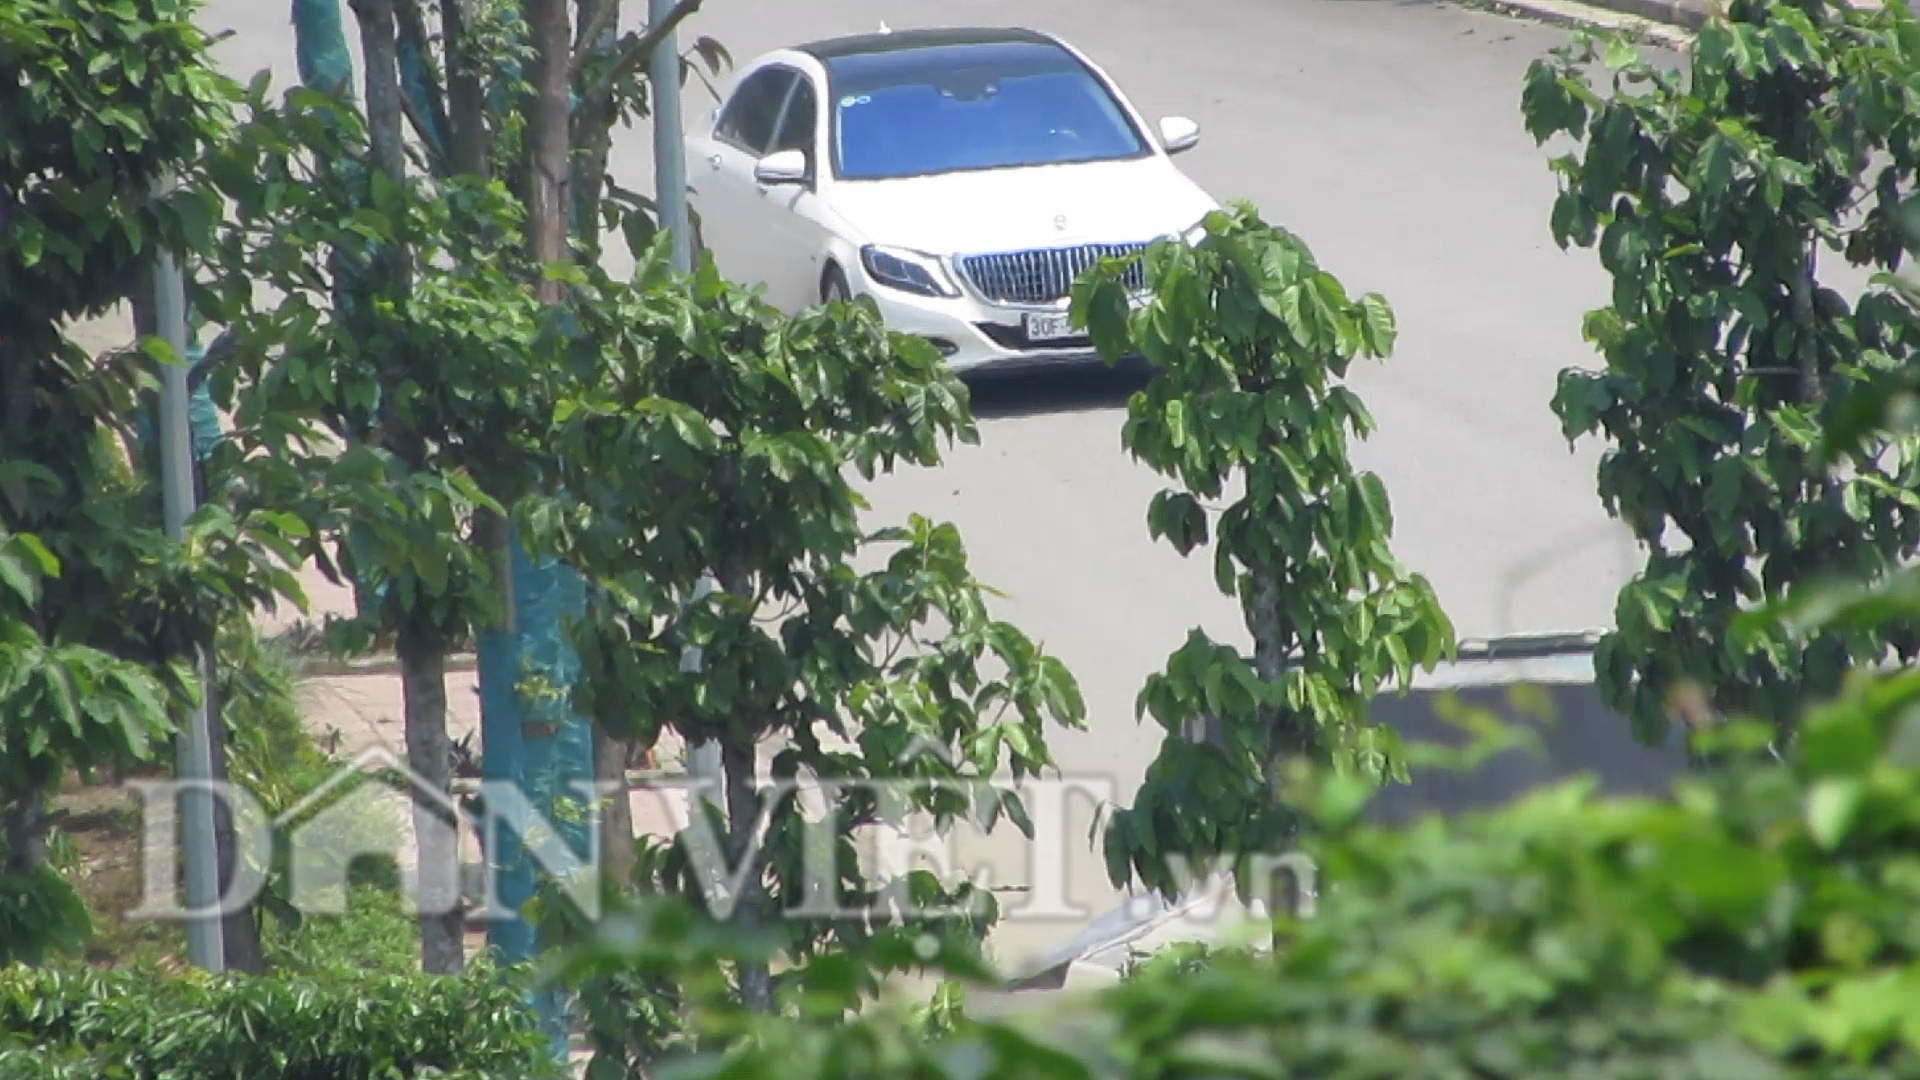 Trái Chỉ thị Thủ tướng, sân golf ở Hà Nam tập nập xe sang, “khách Vip” - Ảnh 2.